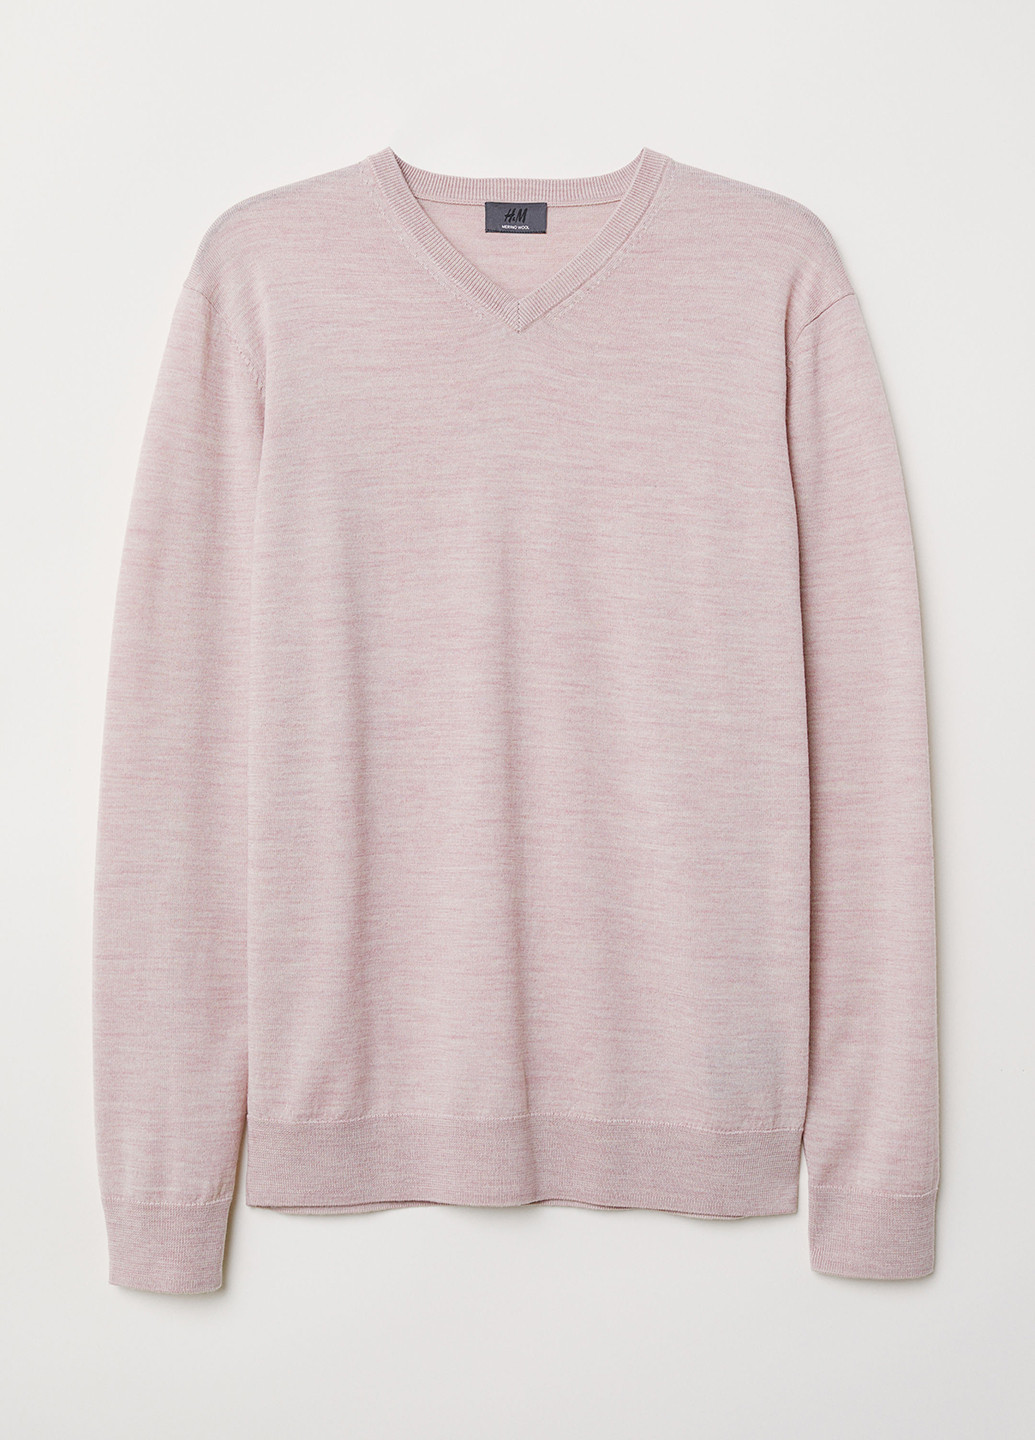 Розовый демисезонный пуловер пуловер H&M